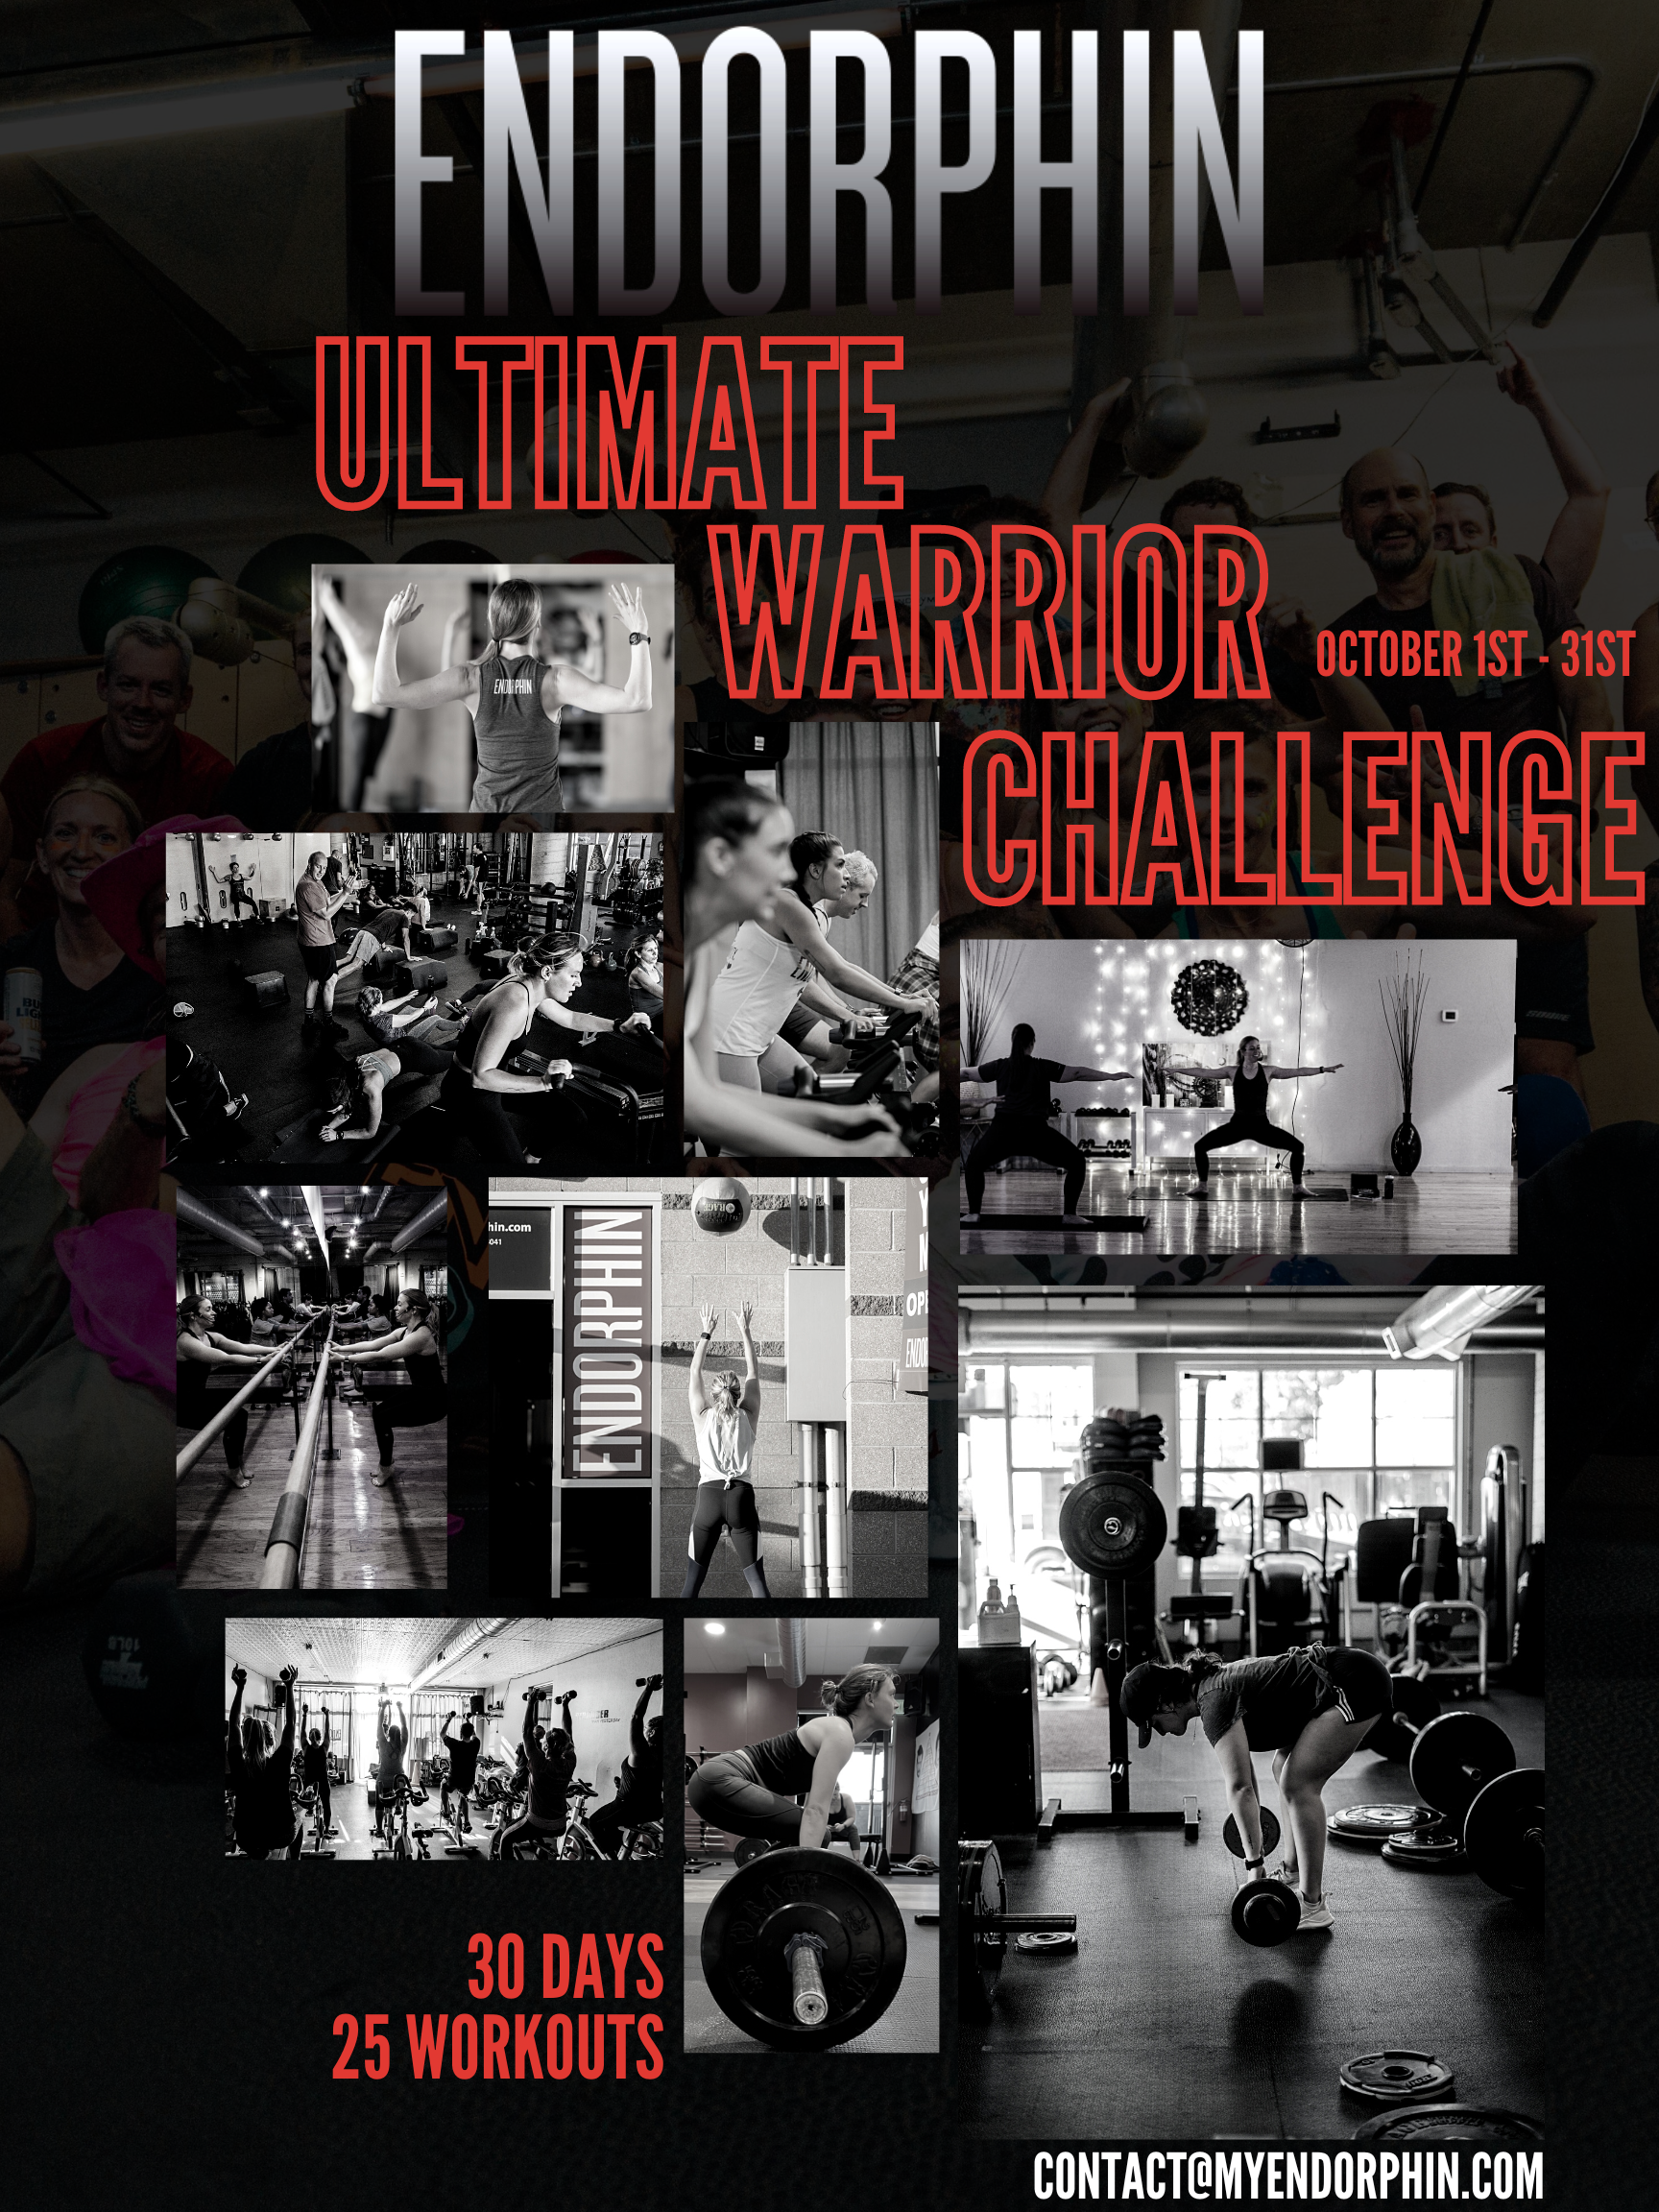 
Ultimate Warrior Challenge